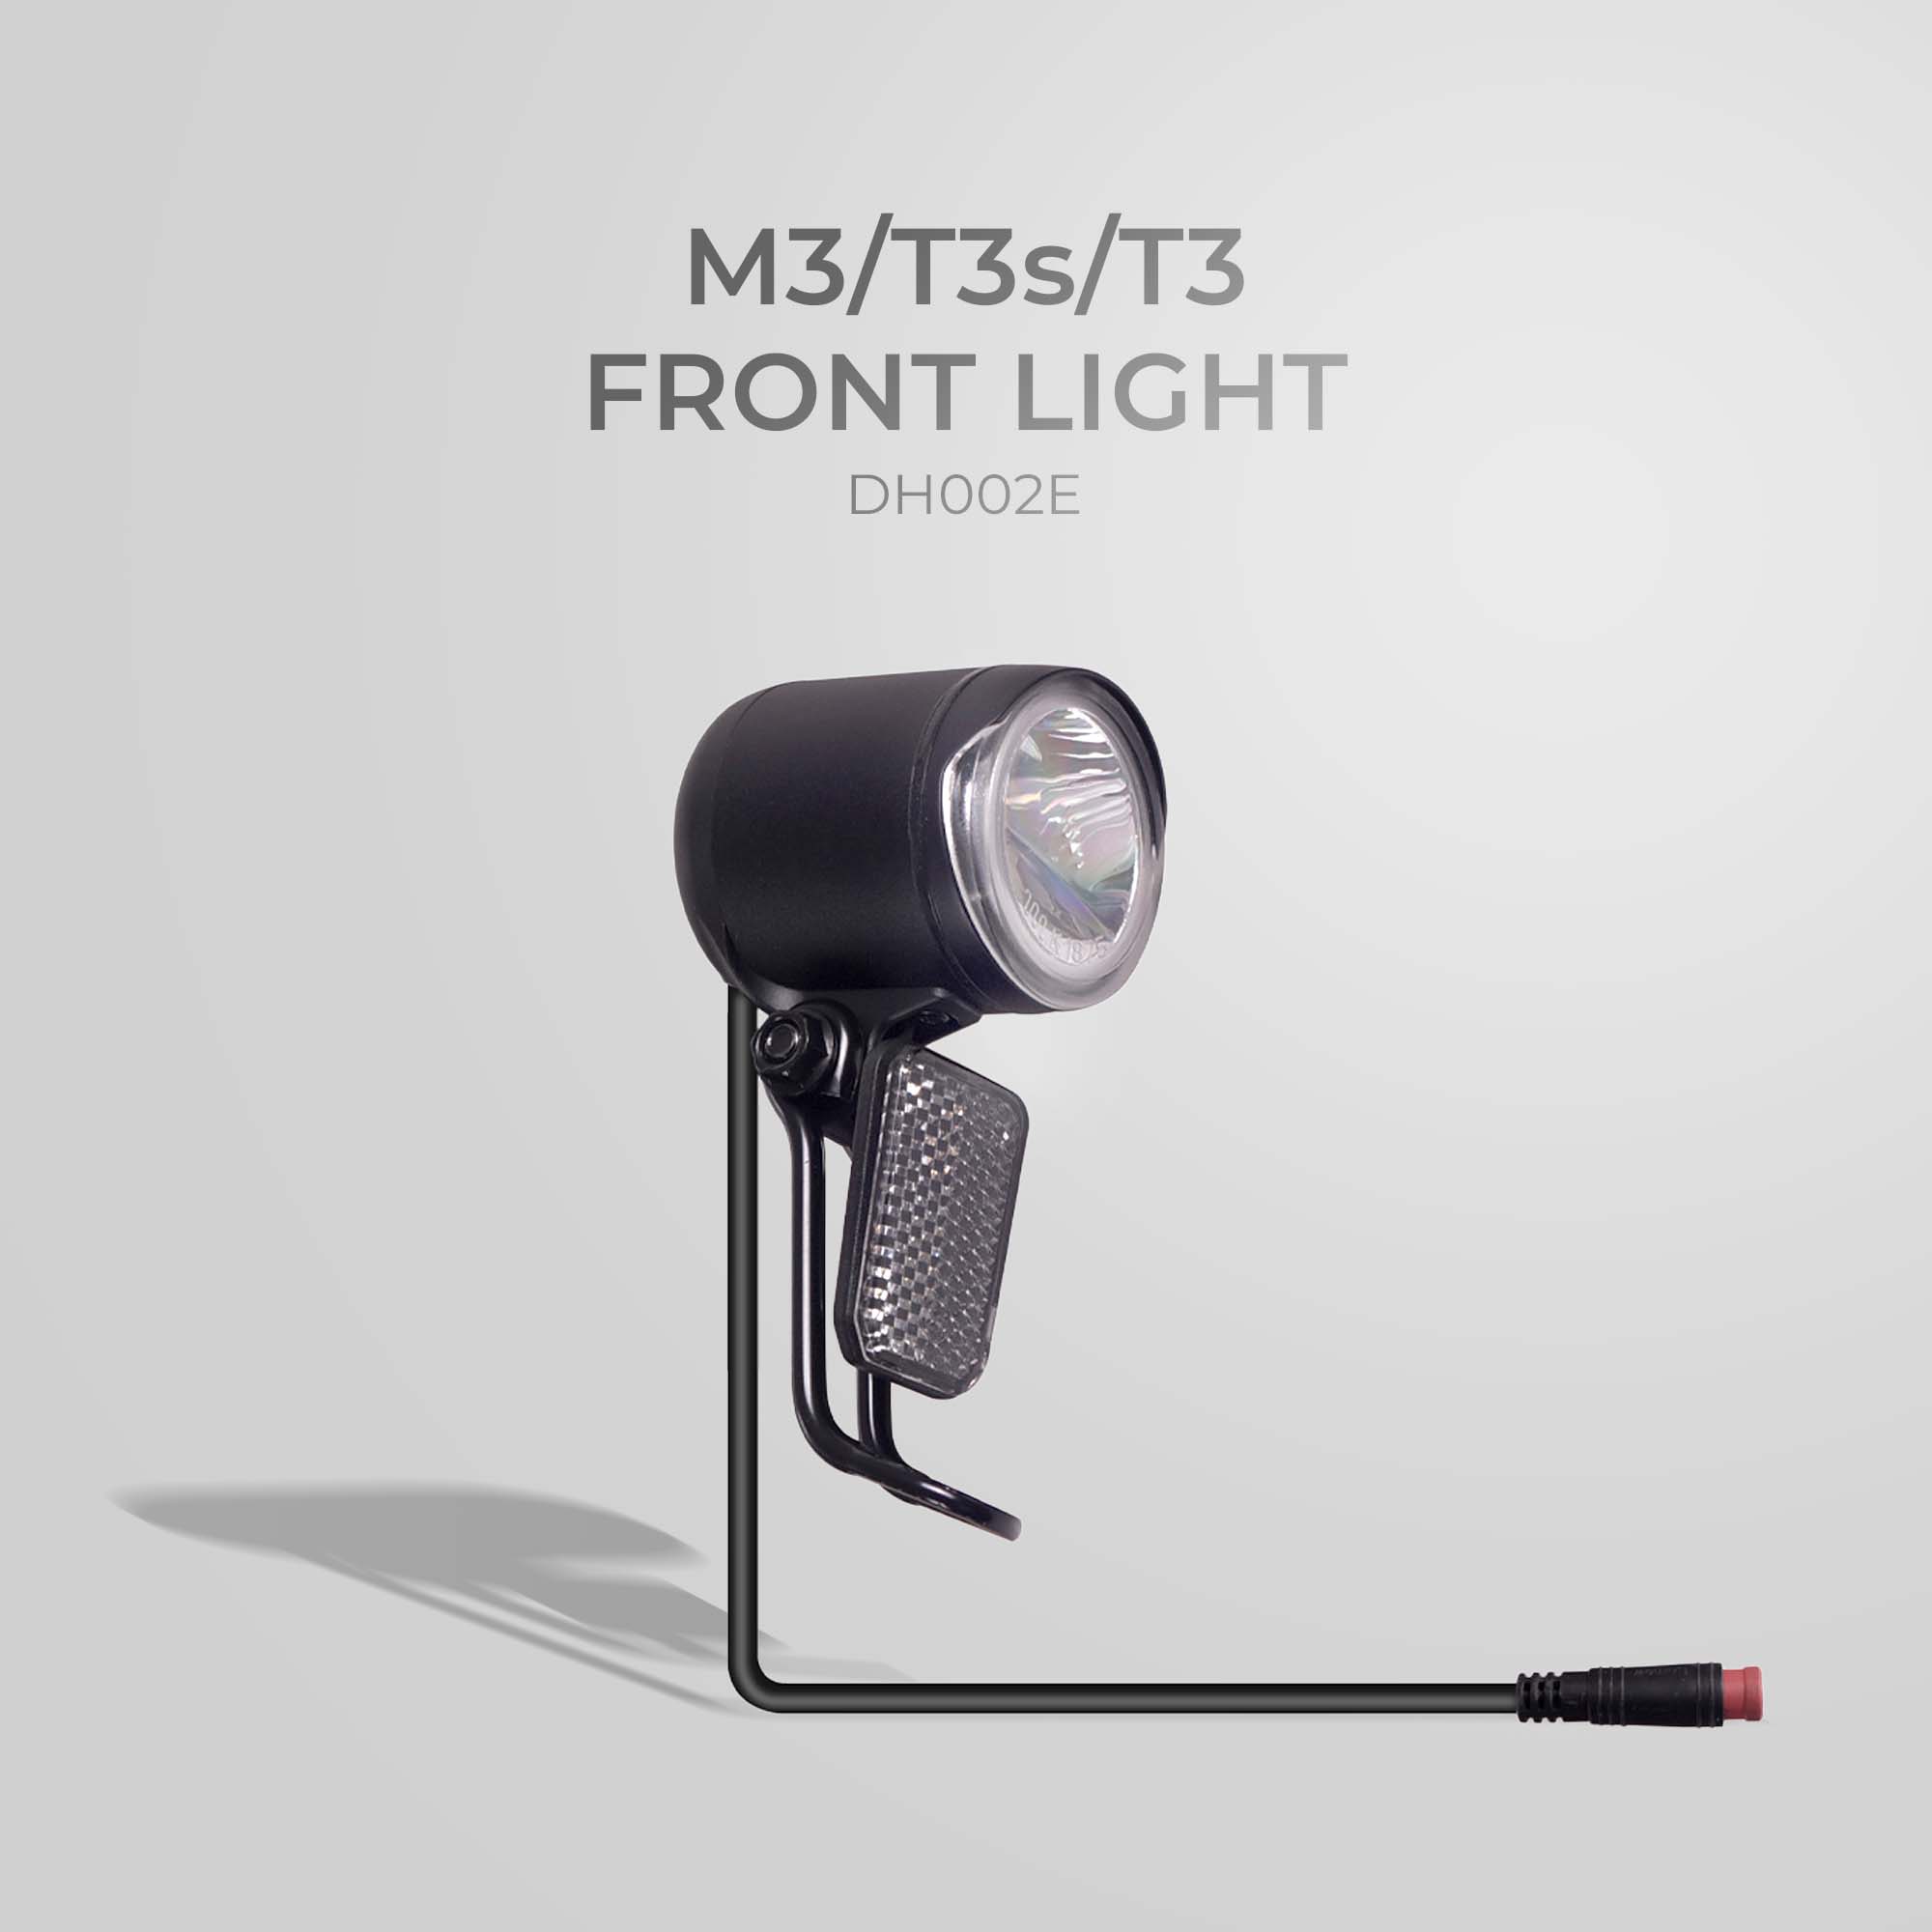 NCM M3/T3s/T3 Front Light - DH002E